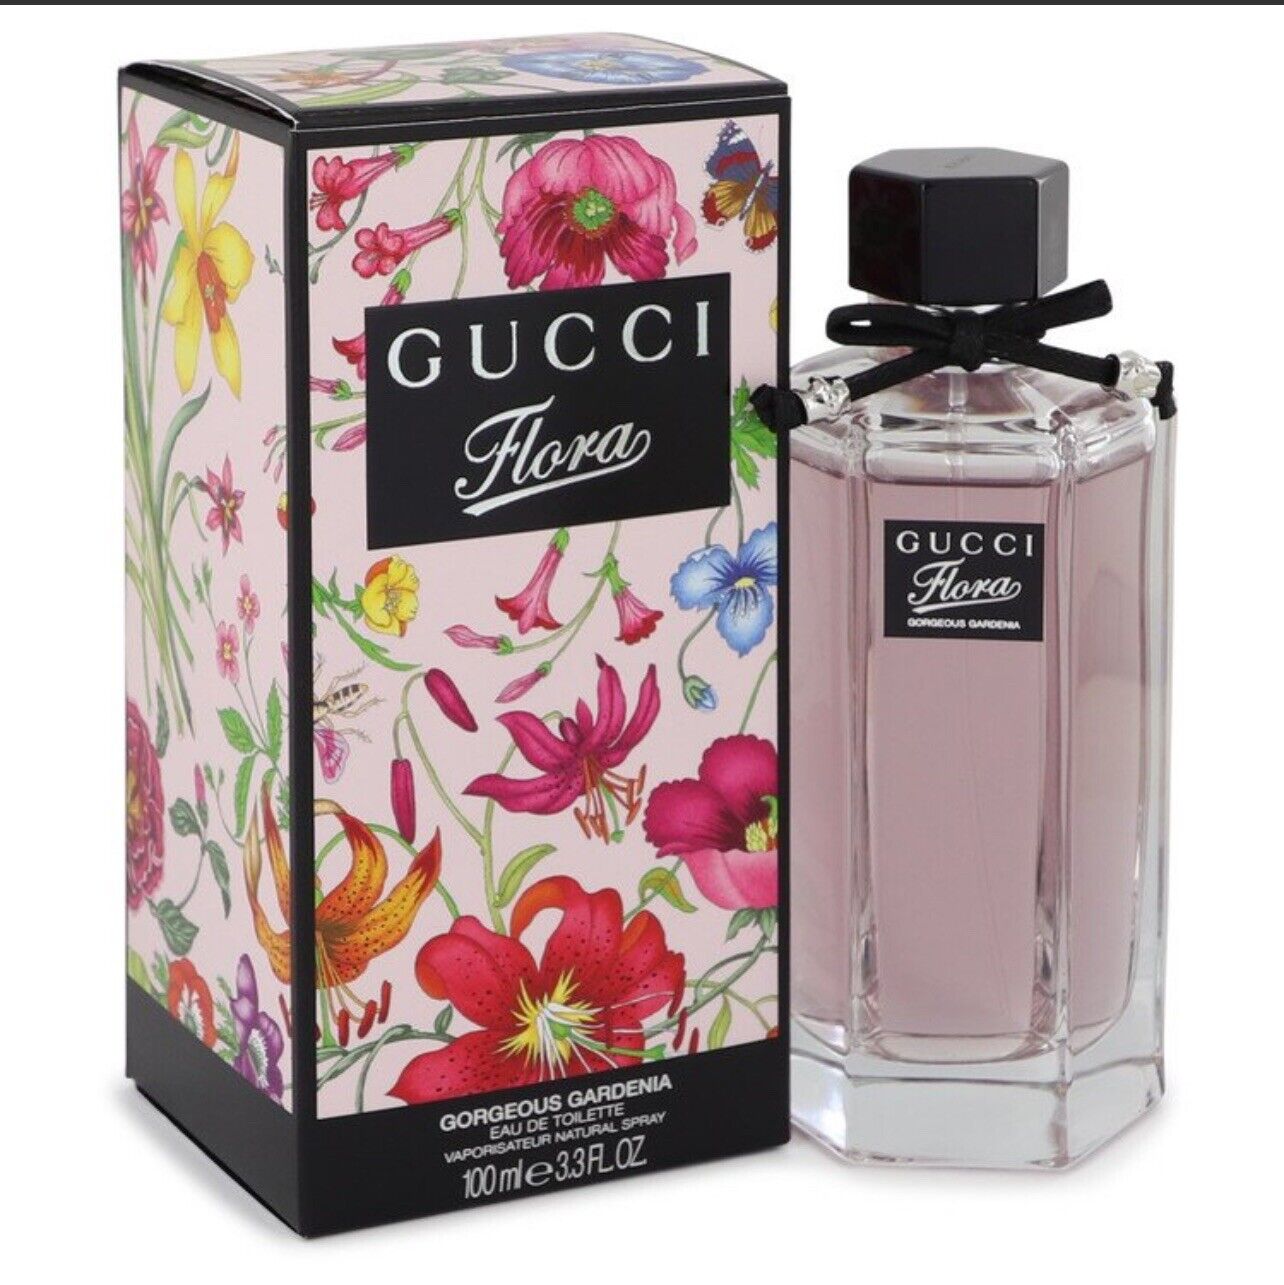 Gucci Flora Gorgeous Gardenia 3.3oz Women\'s Eau de Toilette Spray New Sealed Box